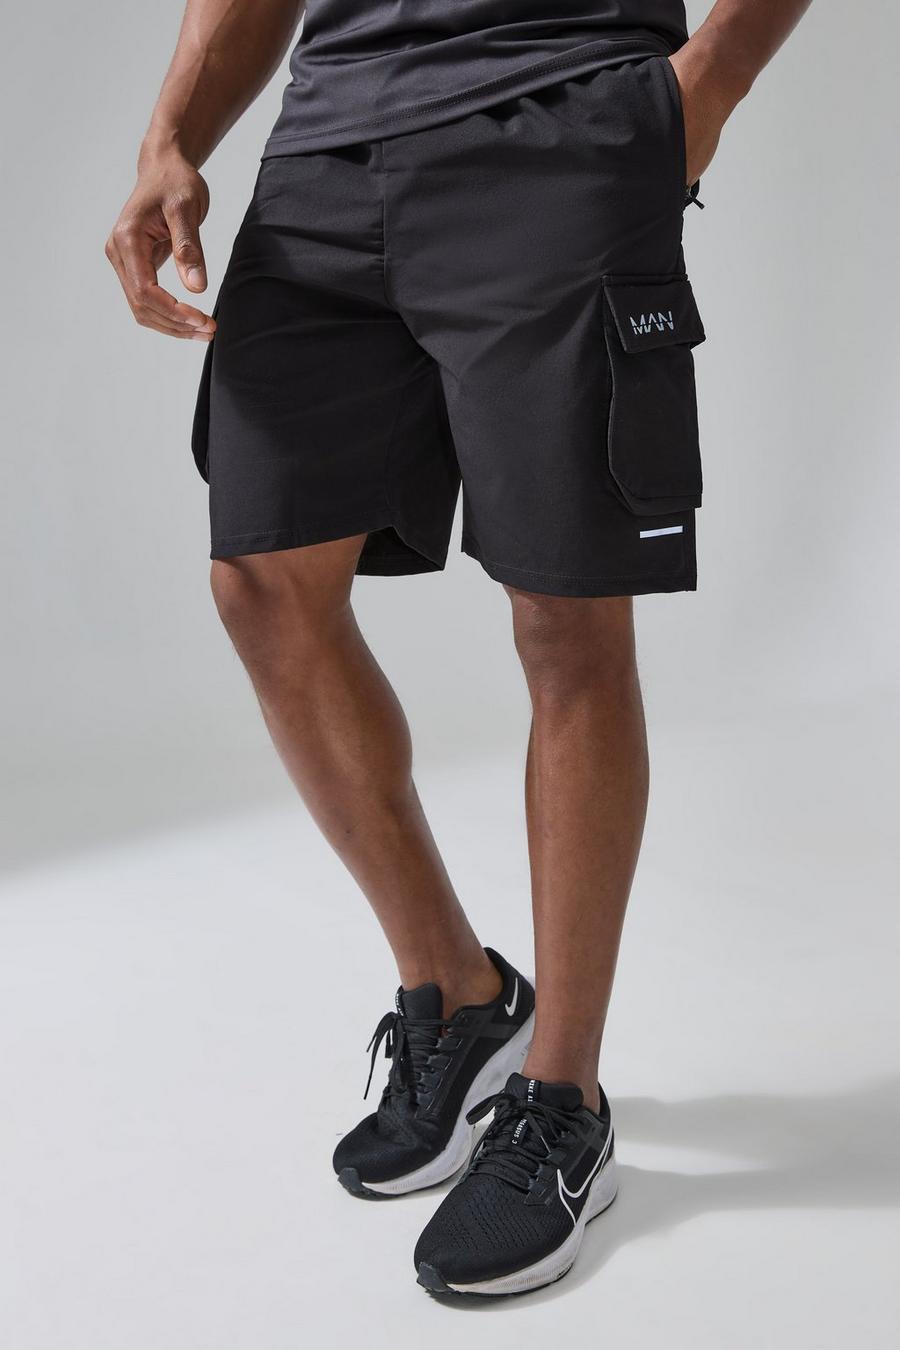 Pantalón corto MAN Active cargo reflectante, Black